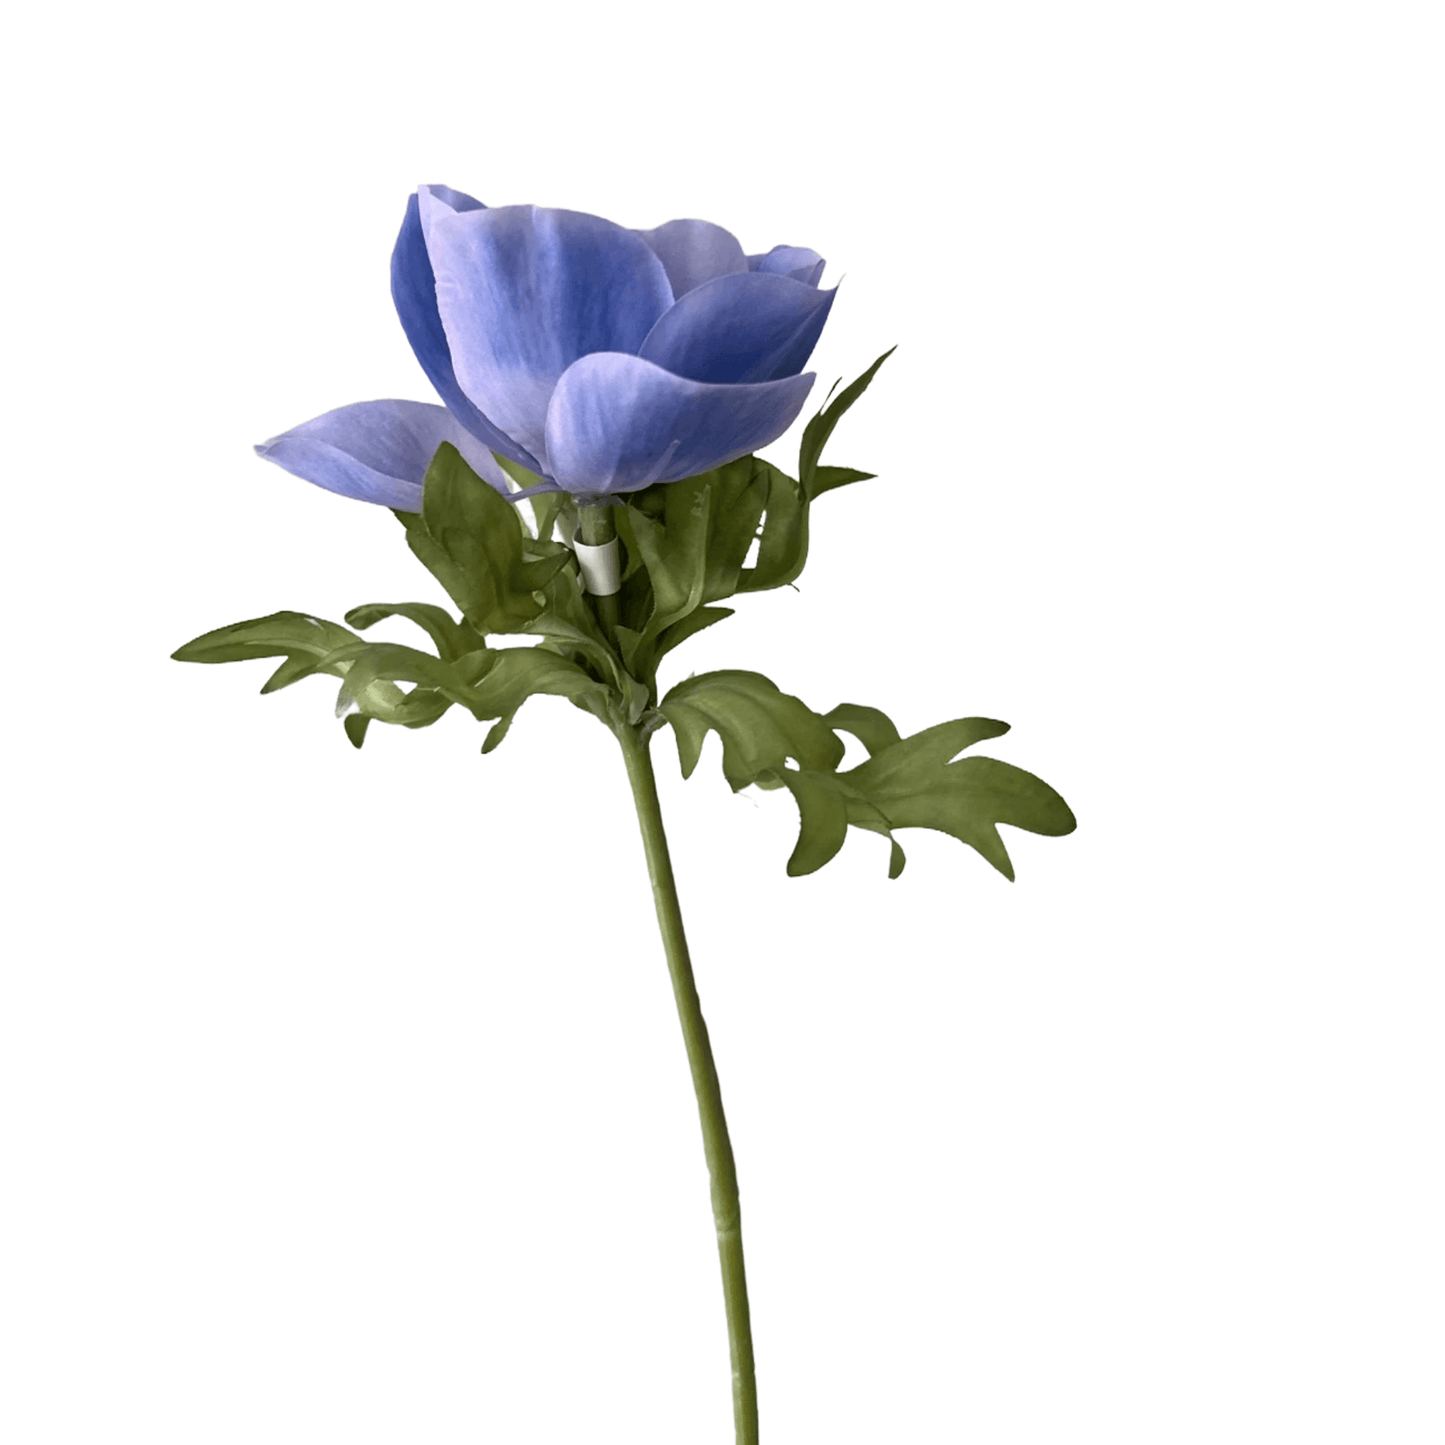 Zijden bloem anemoon blauw/paars